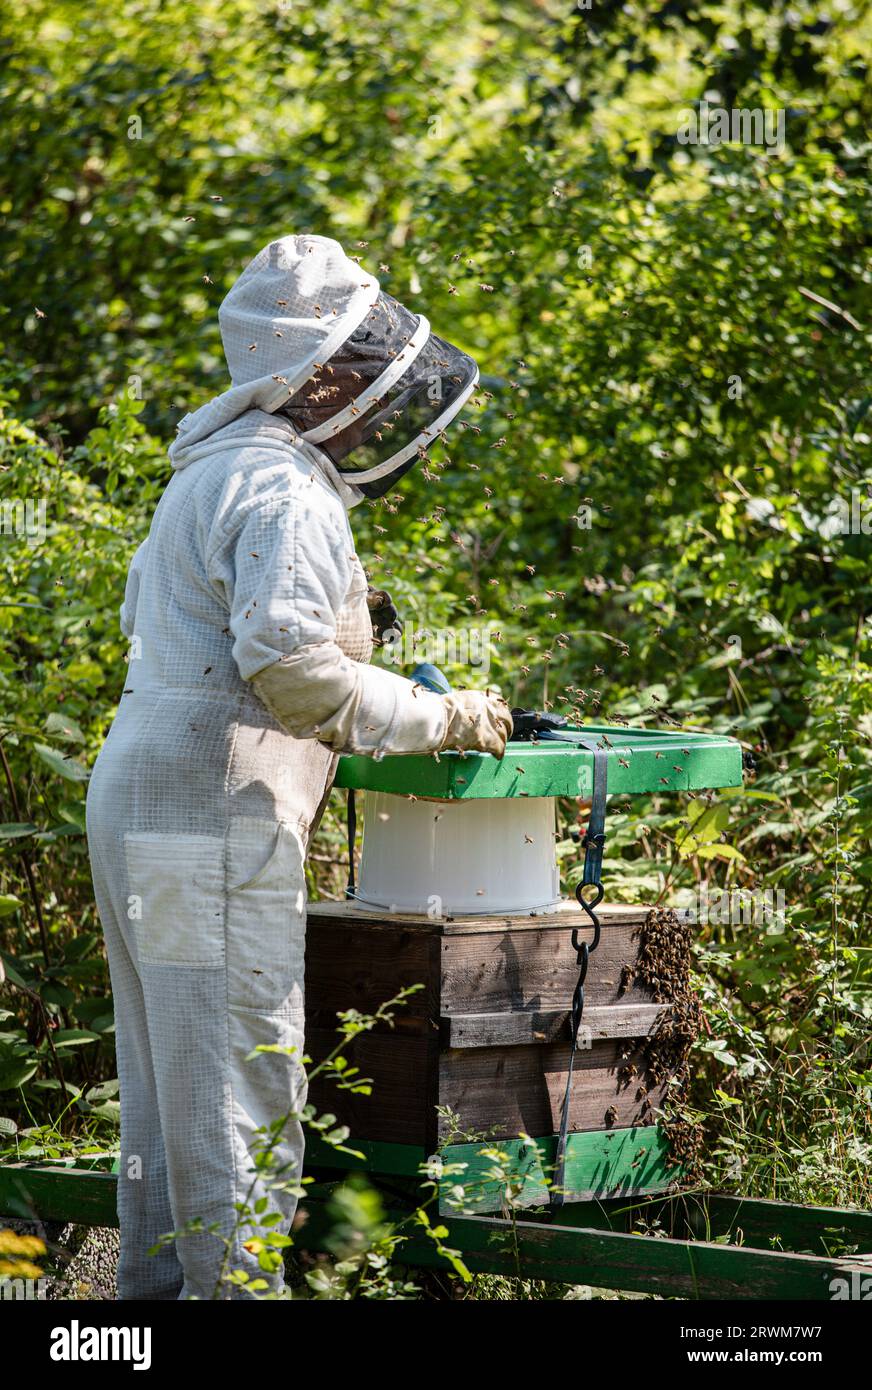 Ein Imker in Schutzkleidung, der in einer üppigen Umgebung, umgeben von grünen Büschen und Bäumen, ihre Bienenstöcke pflegt. Die Szene zeigt den Ser Stockfoto